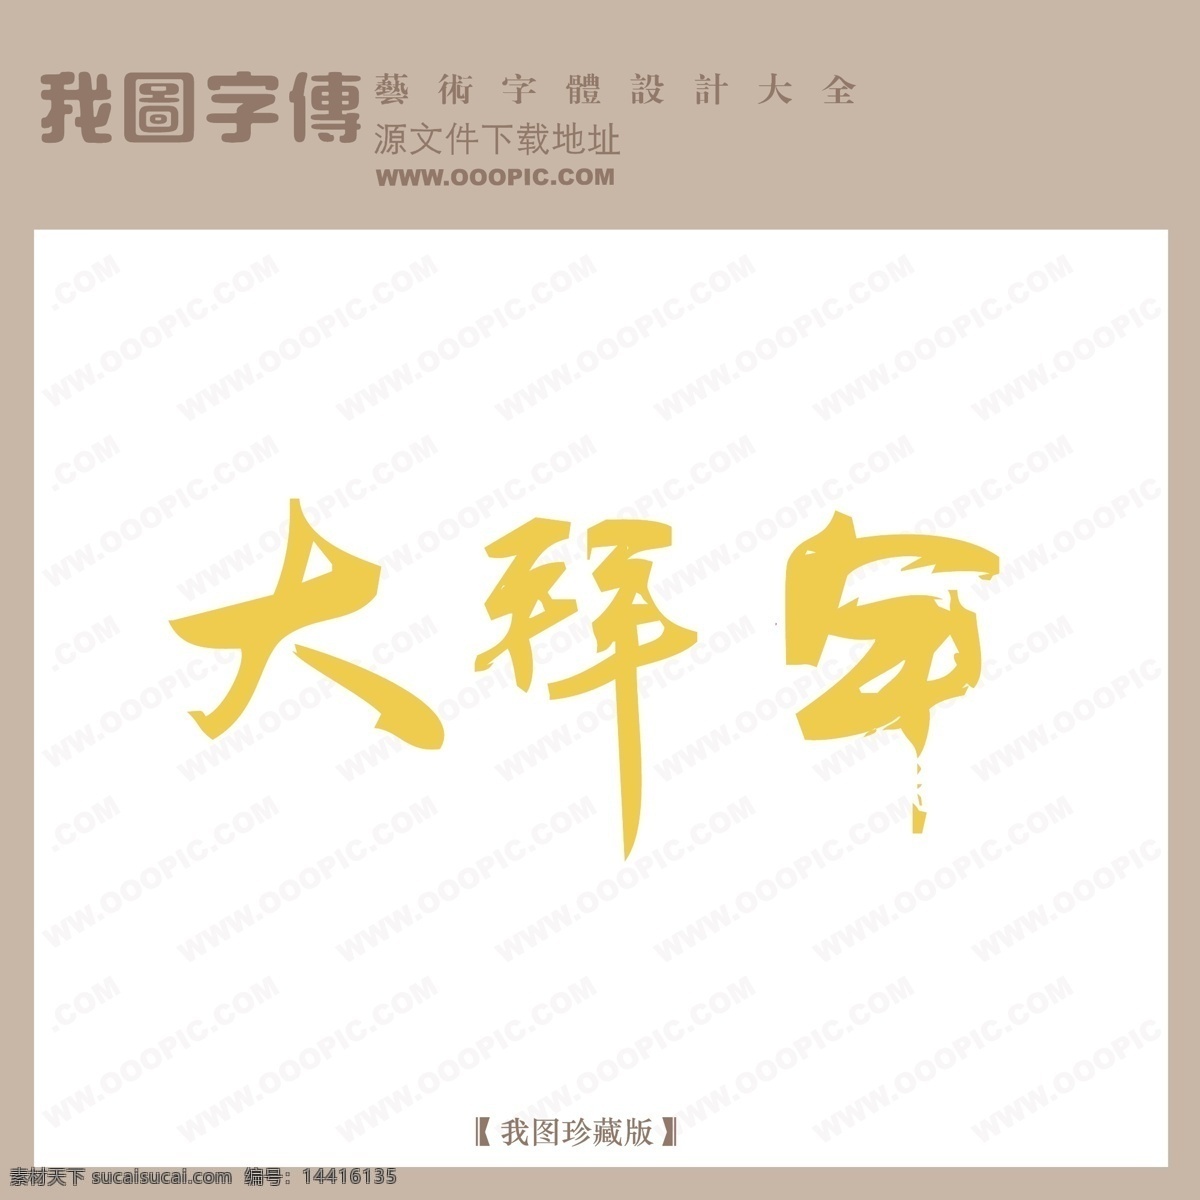 大 拜年 中文 现代艺术 字节 日 艺术 字 创意 美工 大拜年 节日 中国字体设计 矢量图